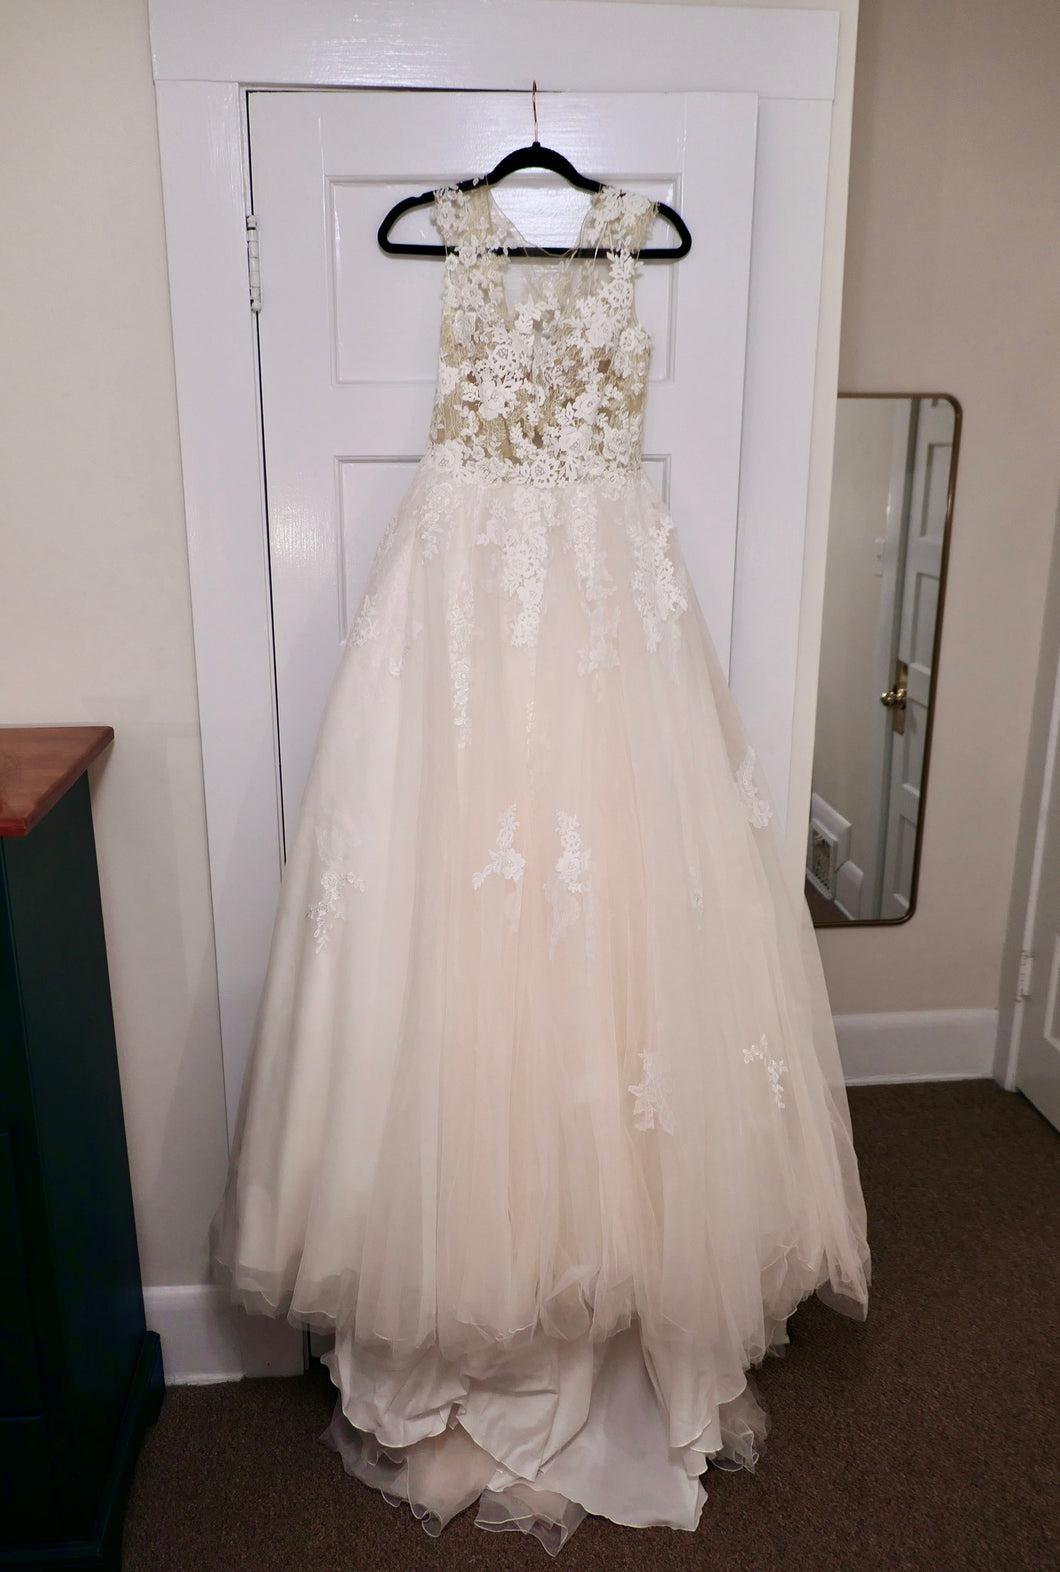 Pronovias 'OFELIA' wedding dress size-04 NEW